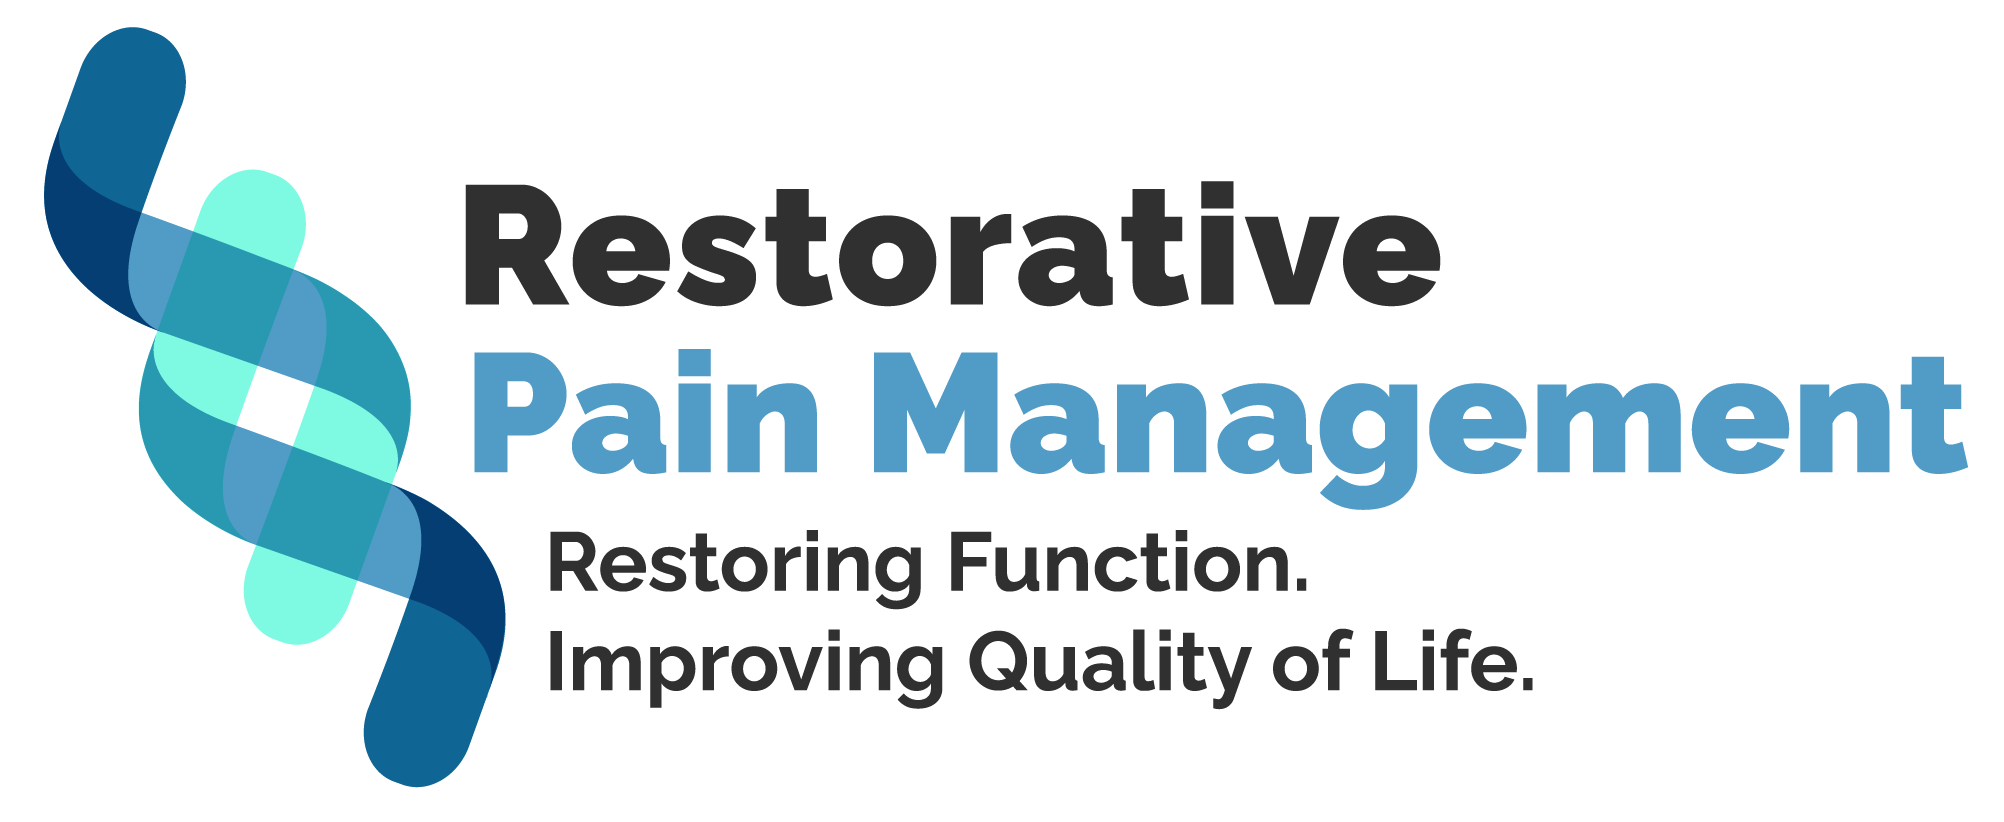 Restorative Pain Management